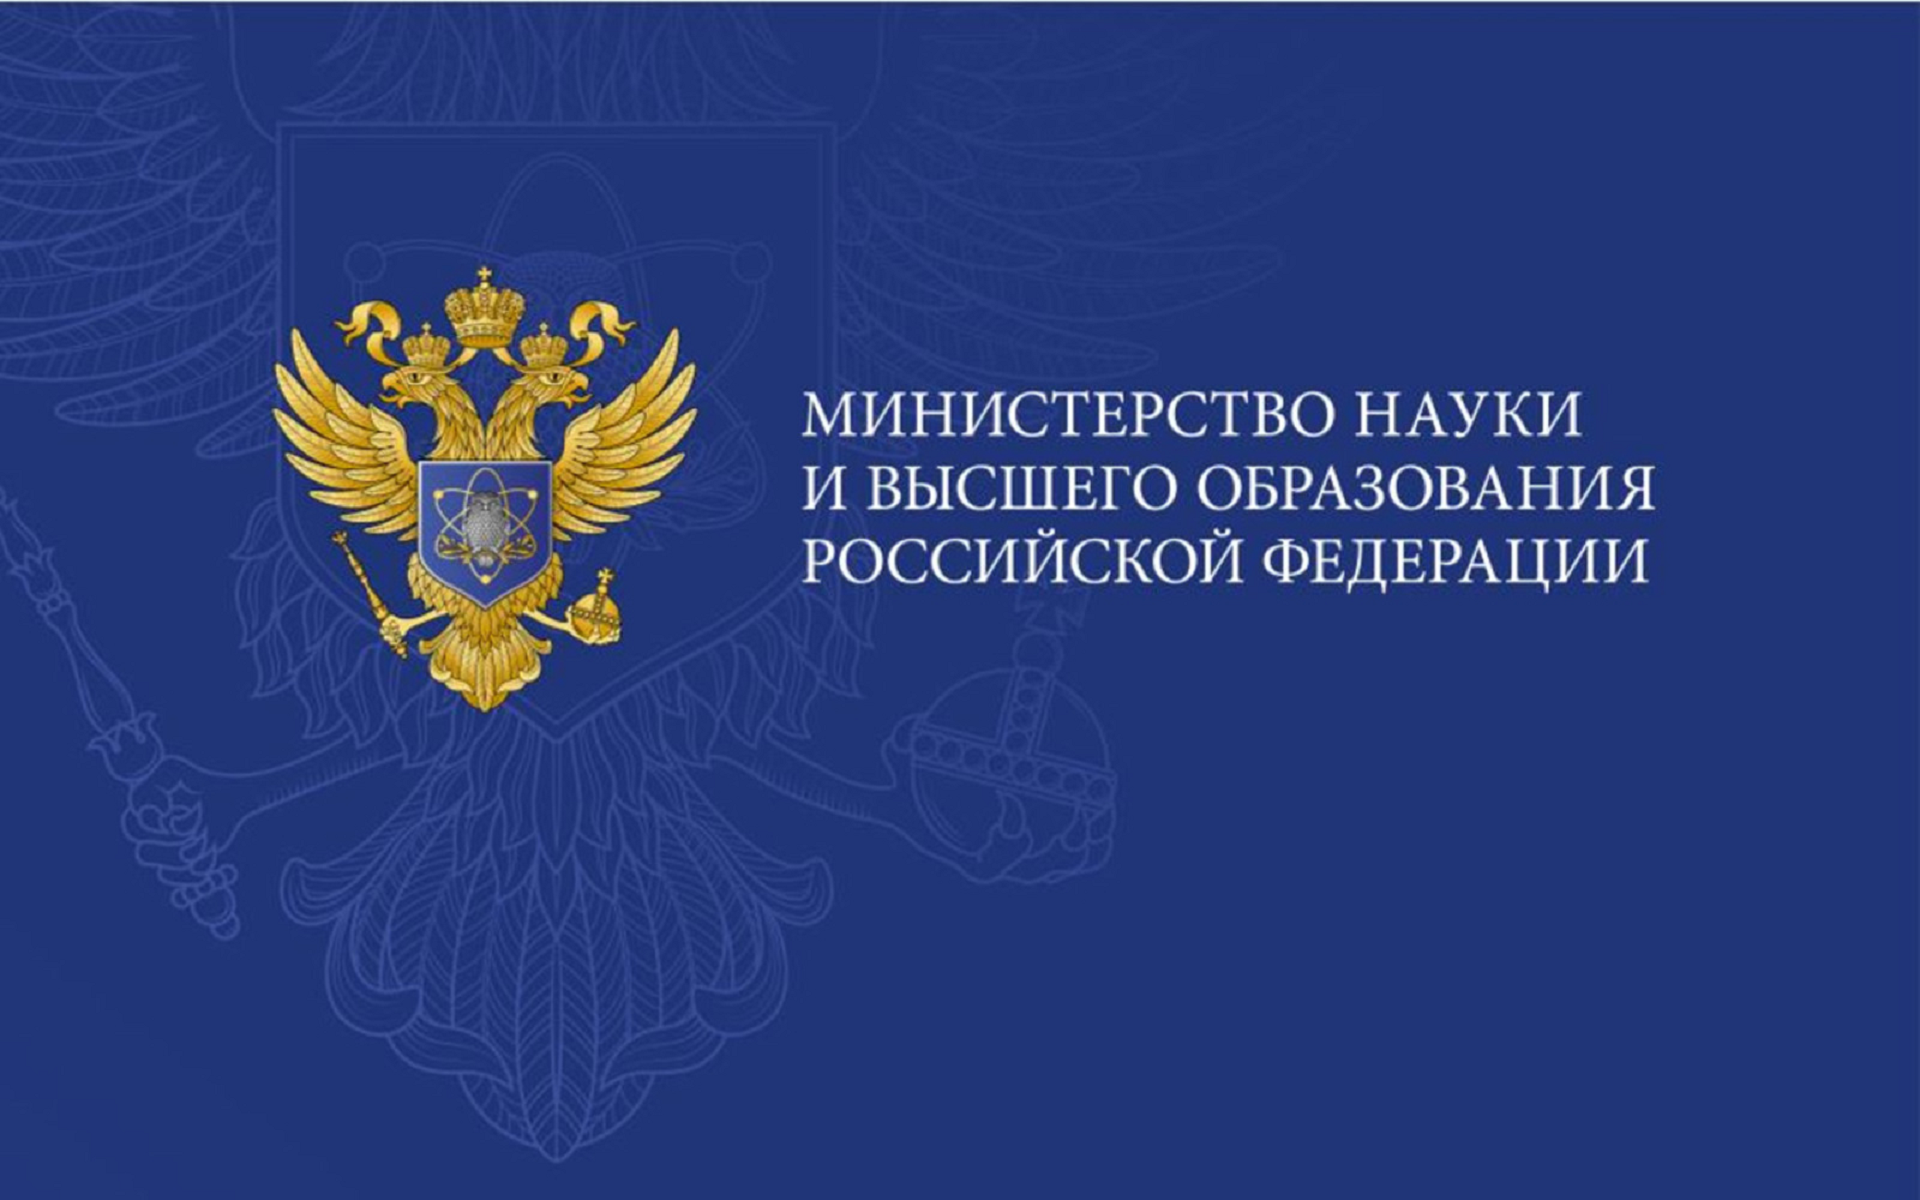 Министерство науки и высшего образования РФ опубликовало ответы на часто задаваемые вопросы